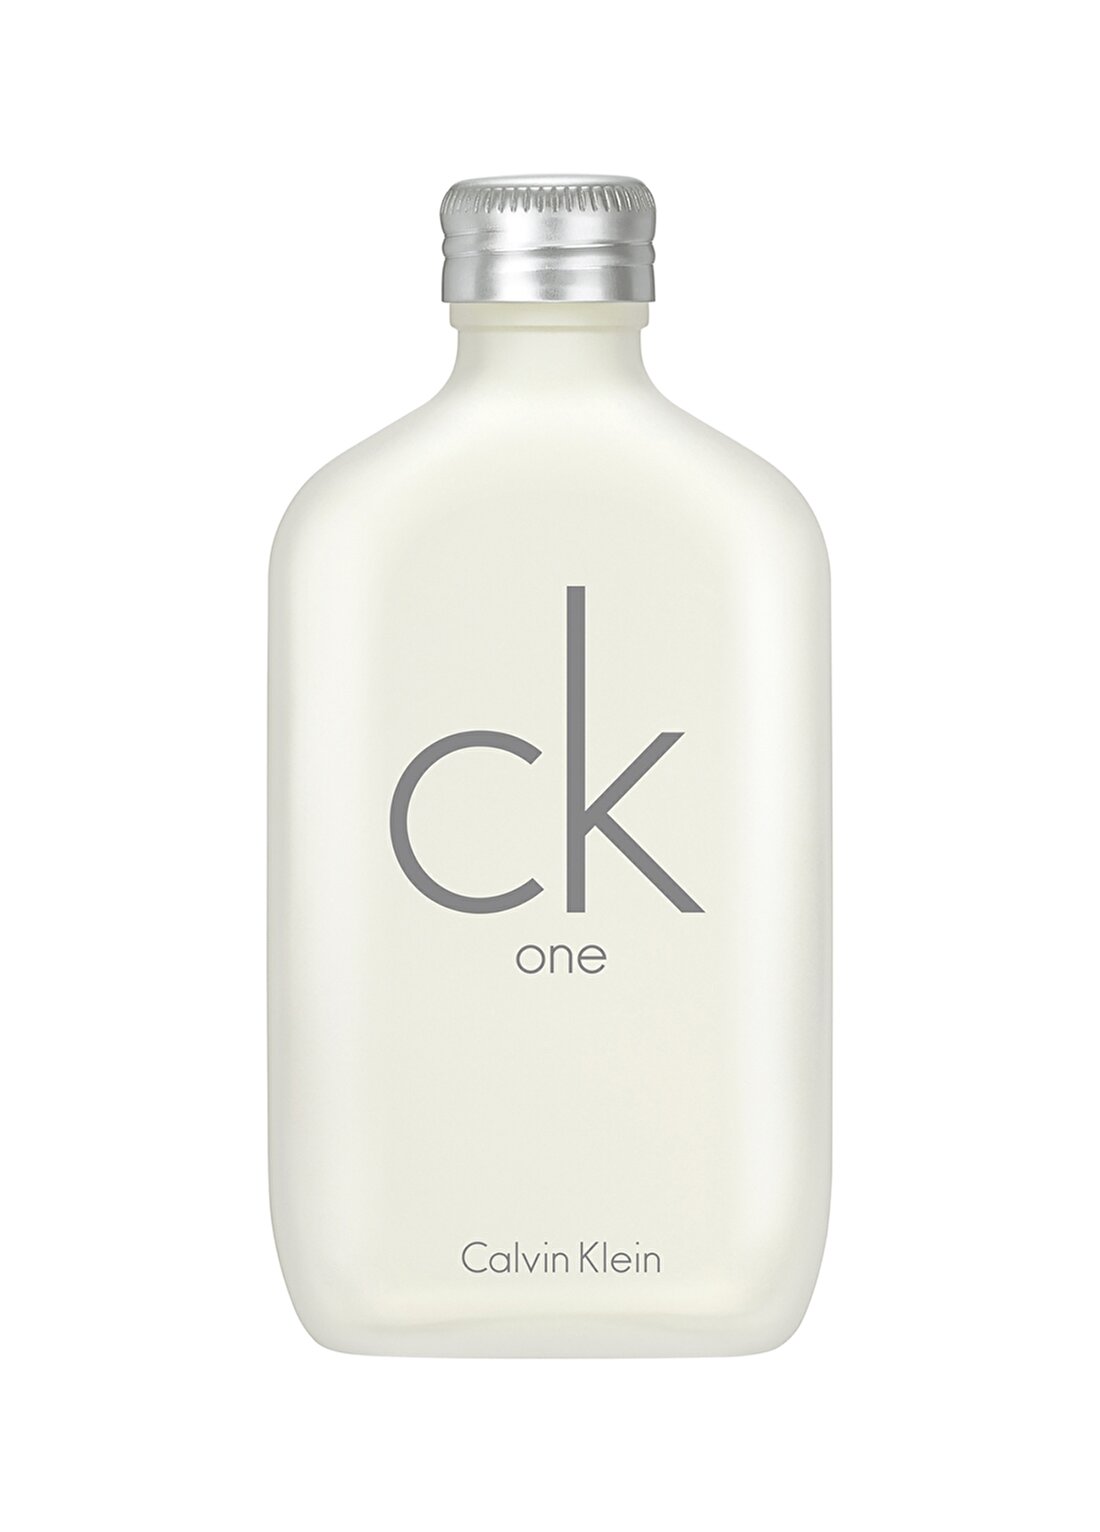 Calvin Klein One Edt 100 Ml Kadın Parfüm